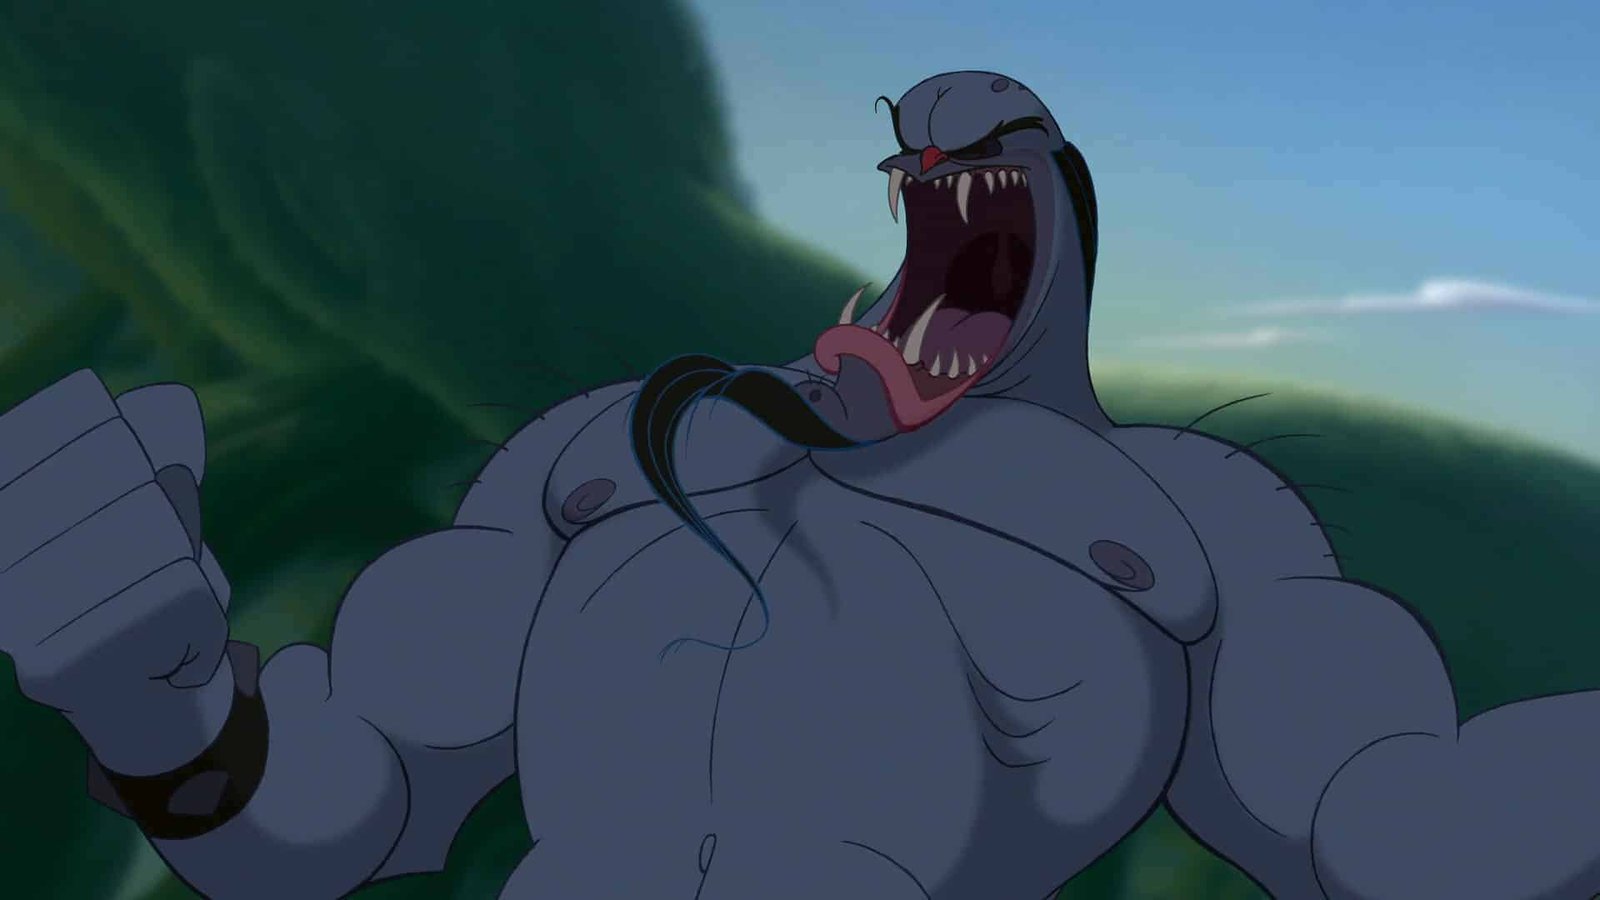 Un personnage animé de Disney d'Hercule, le Cyclope, est représenté rugissant de manière agressive avec un œil et une carrure musclée, sur un fond vert flou.